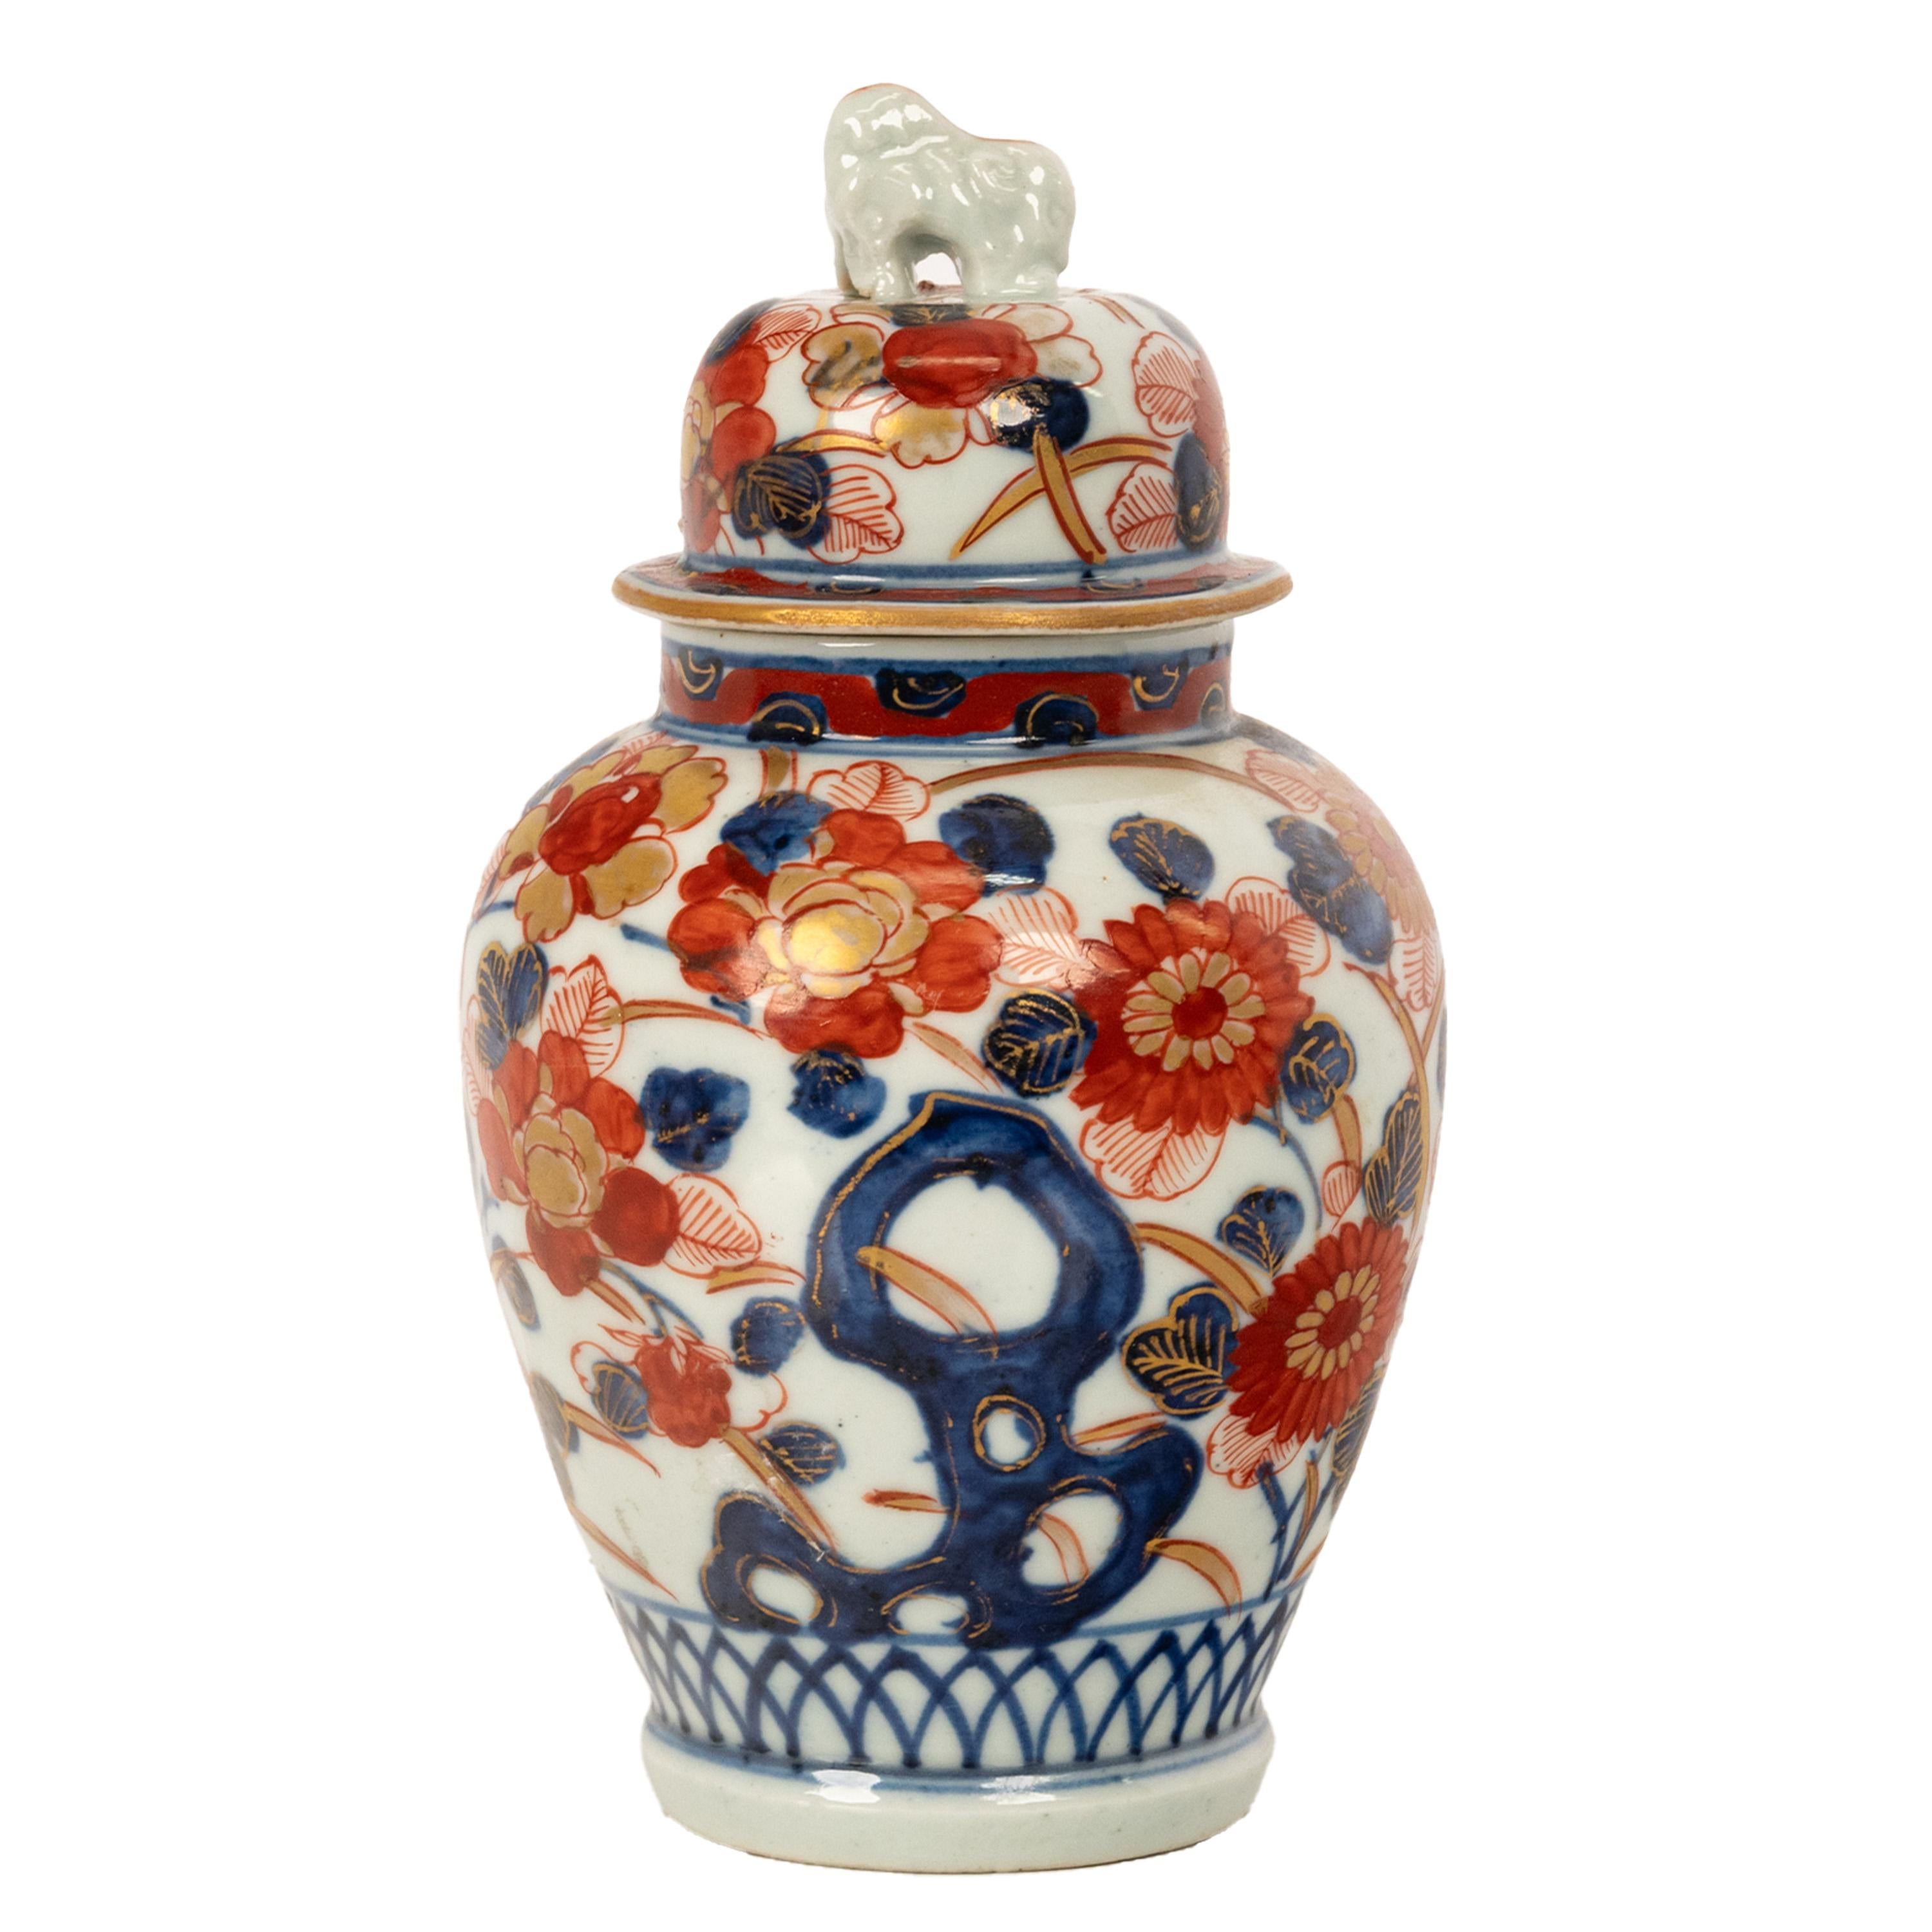 Eine gute antike 19. Jahrhundert japanischen Imari Porzellan Keramik Deckel Ingwer Glas / Vase, ca. 1890.
Der kuppelförmige Deckel ist mit einem Komainu-Finial (japanischer Löwentempelwächter) verziert. Die eiförmige Vase und der Deckel sind beide